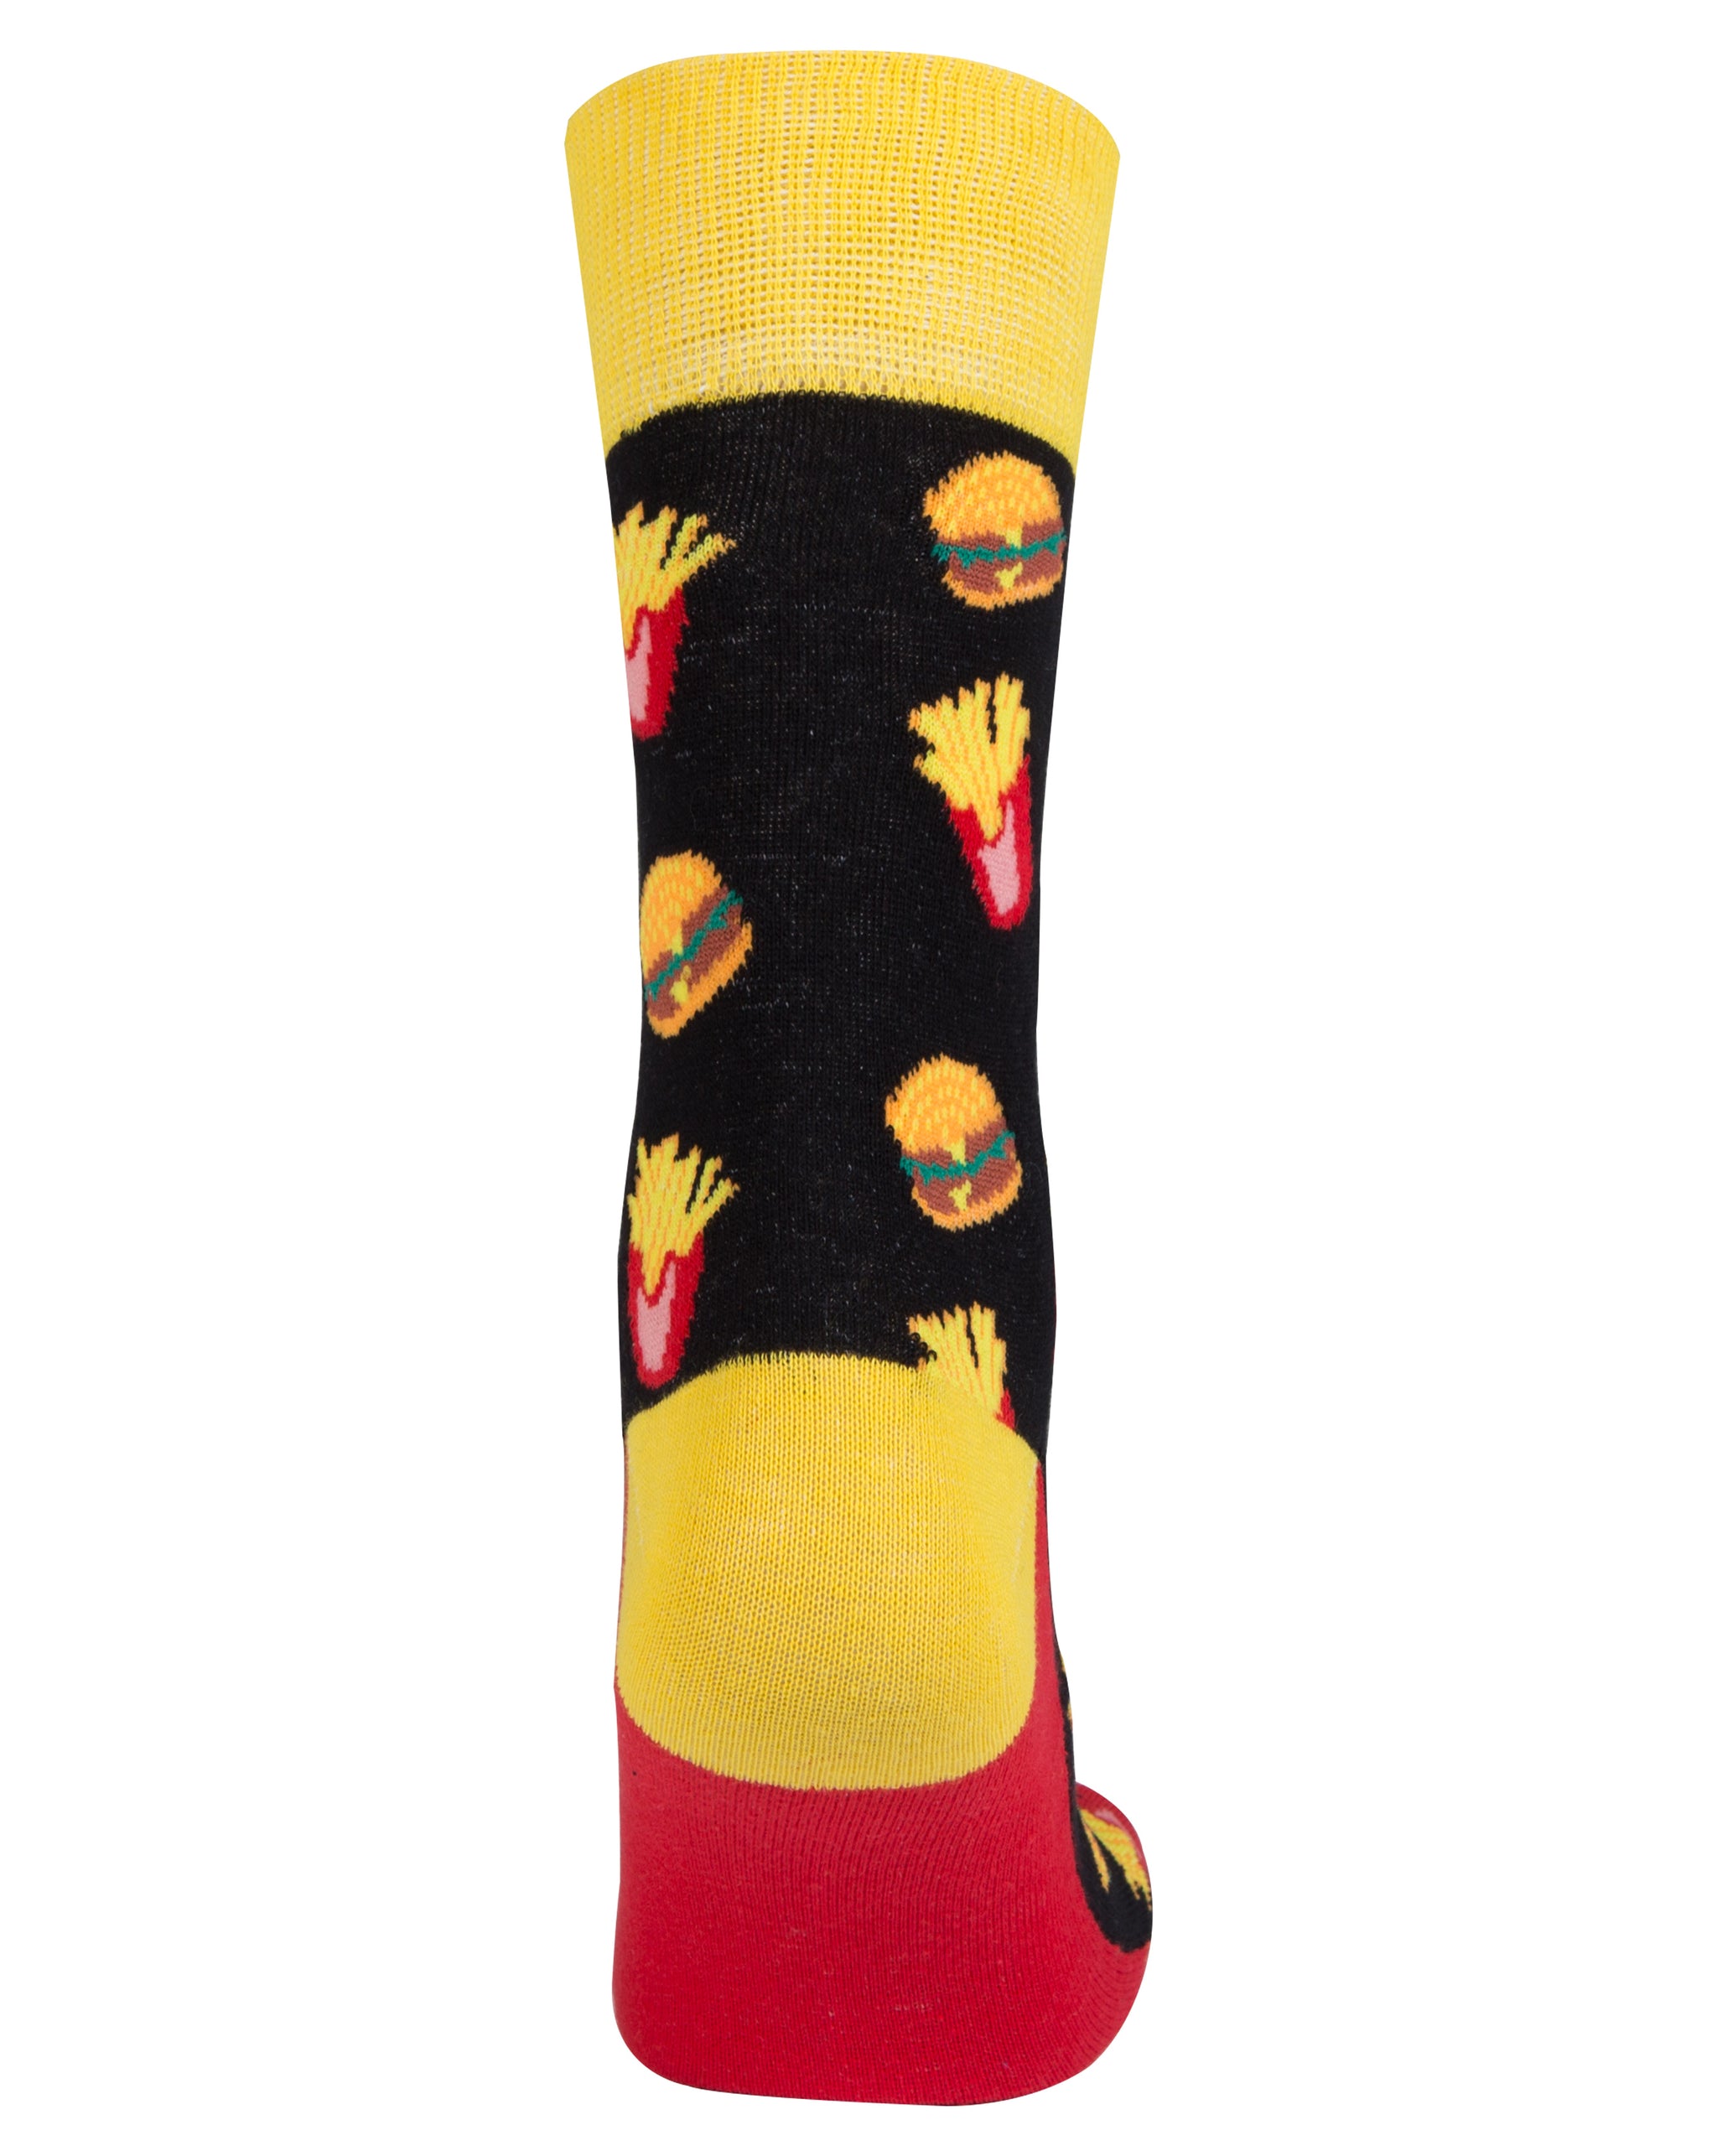 Men's Fries Socks